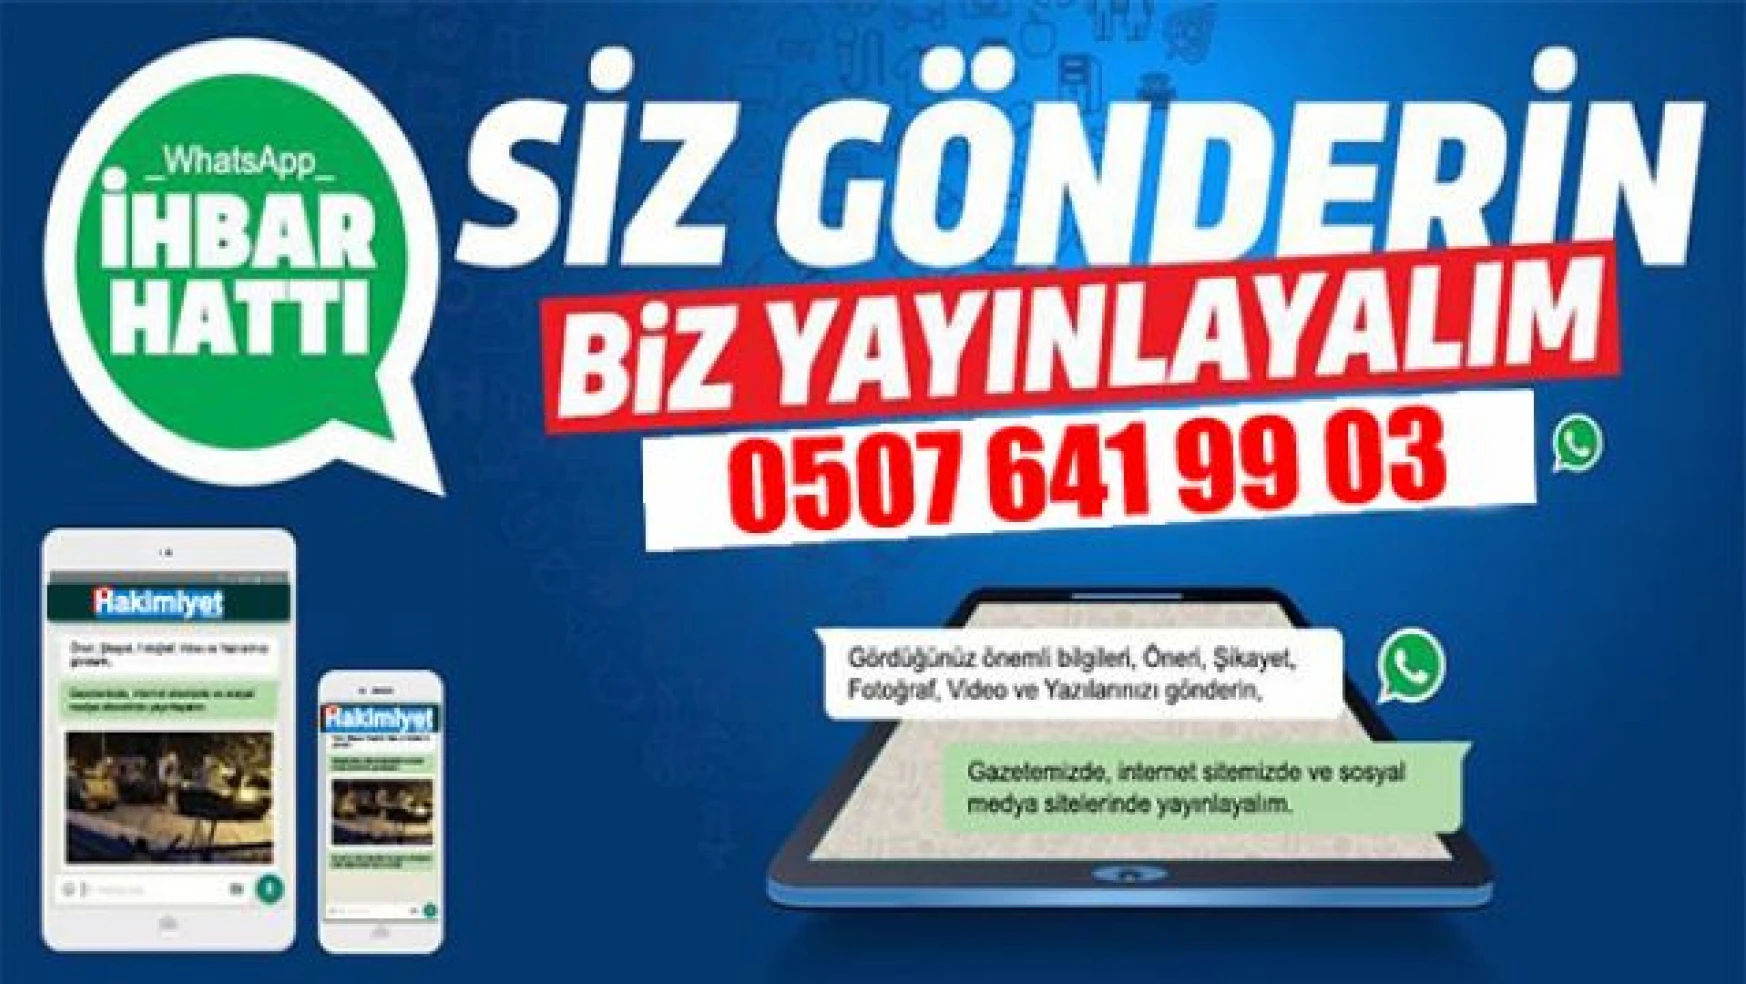 Van Hakimiyet Gazetesi WhatsApp İhbar Hattı Yayında! - Van Haber